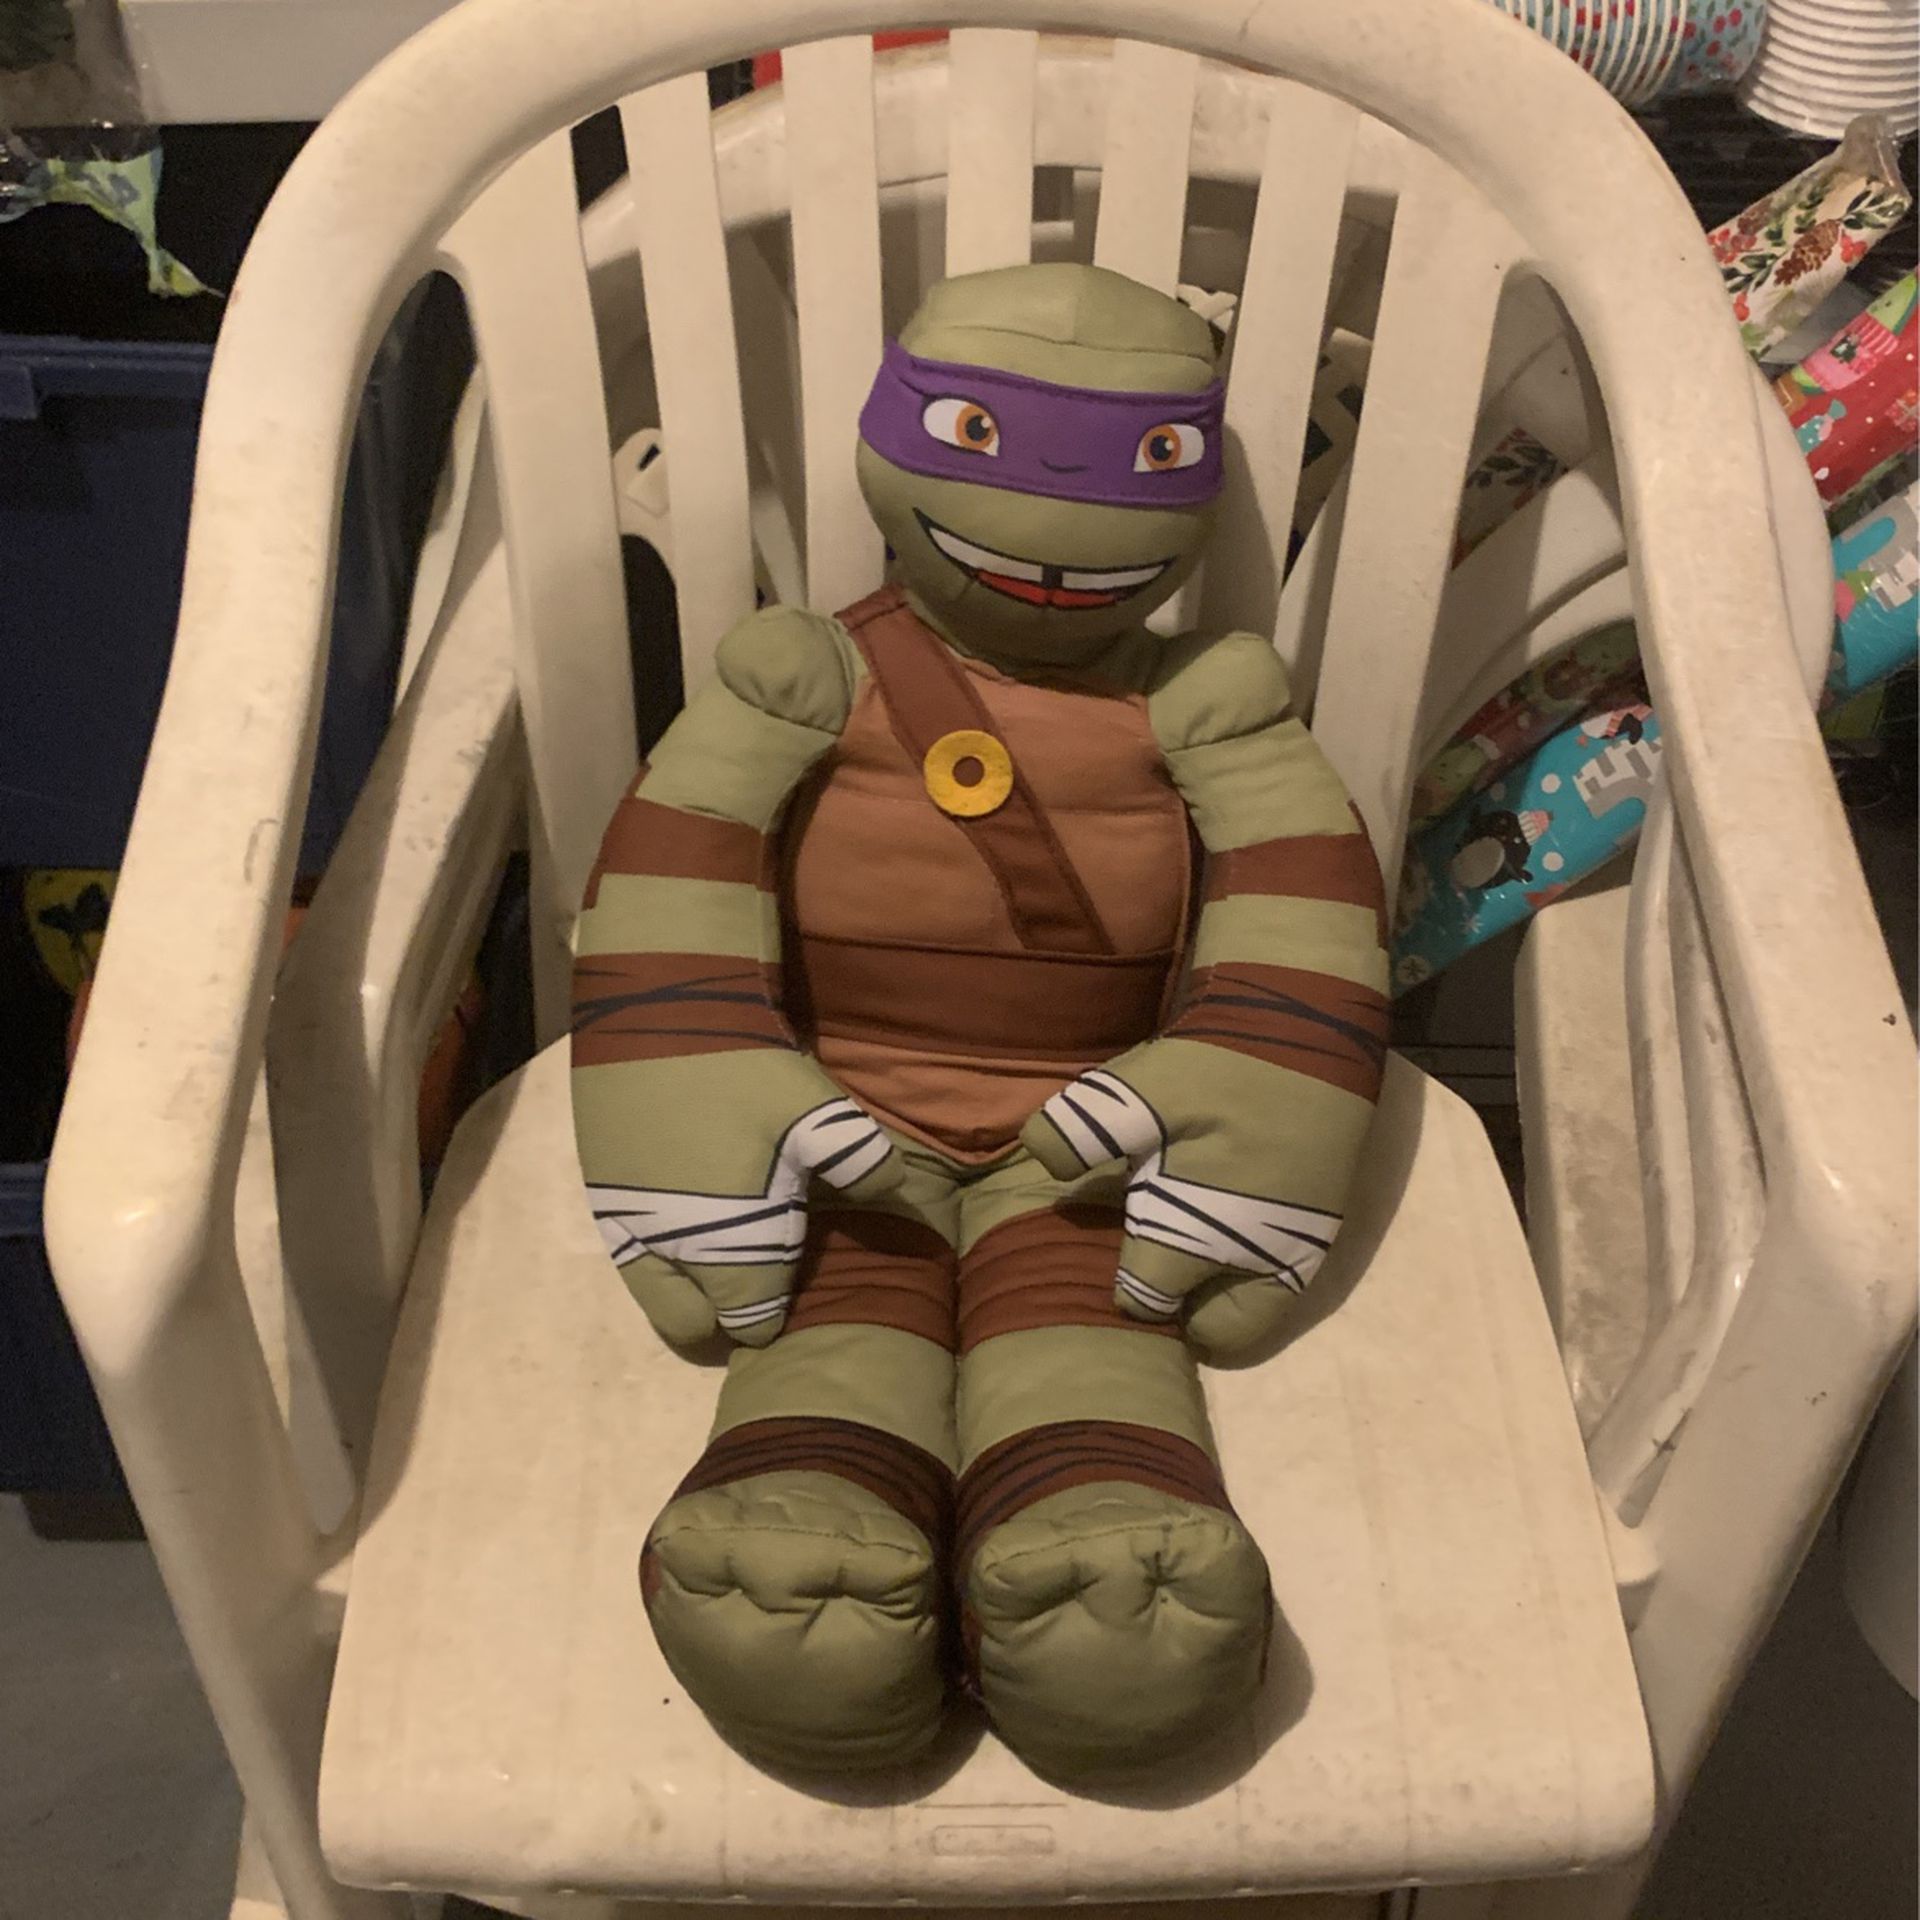 Donatello Stuffed Animal